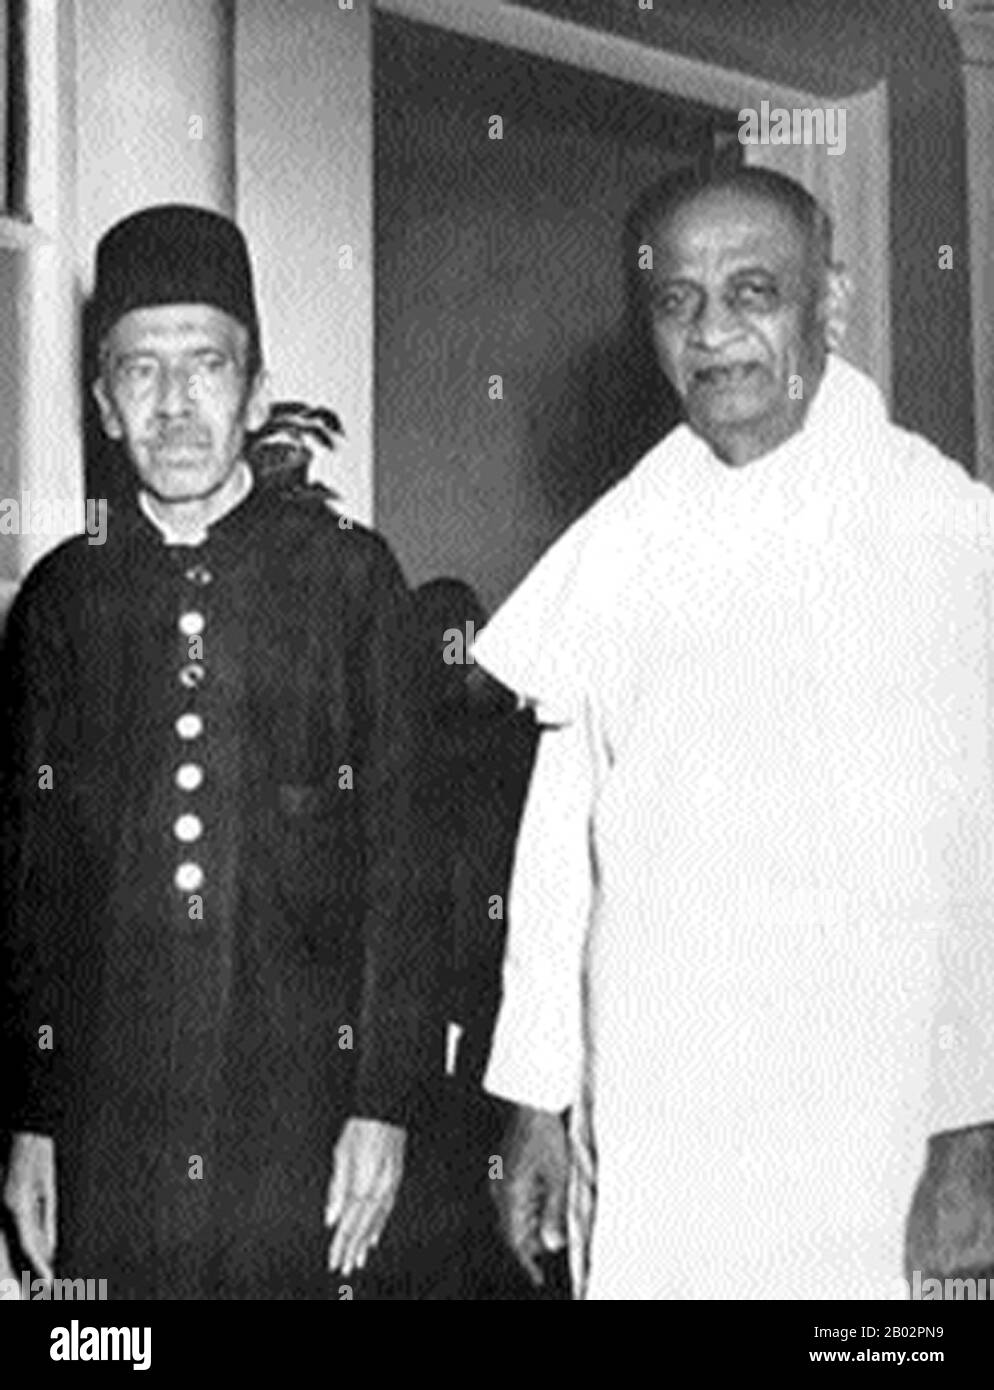 Nizam Sir mir Osman Ali Khan Siddiqi Asaf Jah VII. War der letzte Nizam (oder Machthaber) des Fürstenstaates Hyderabad und von Berar. Er regierte zwischen 1911 und 1948 Hyderabad, bis es von Indien annektiert wurde. Vallabhbhai Jhaverbhai Patel (31. Oktober 1875 - 15. Dezember 1950) war ein indischer Barrister und Staatsmann, einer der Führer des Indischen Nationalkongresses und einer der Gründerväter der Republik Indien. Stockfoto